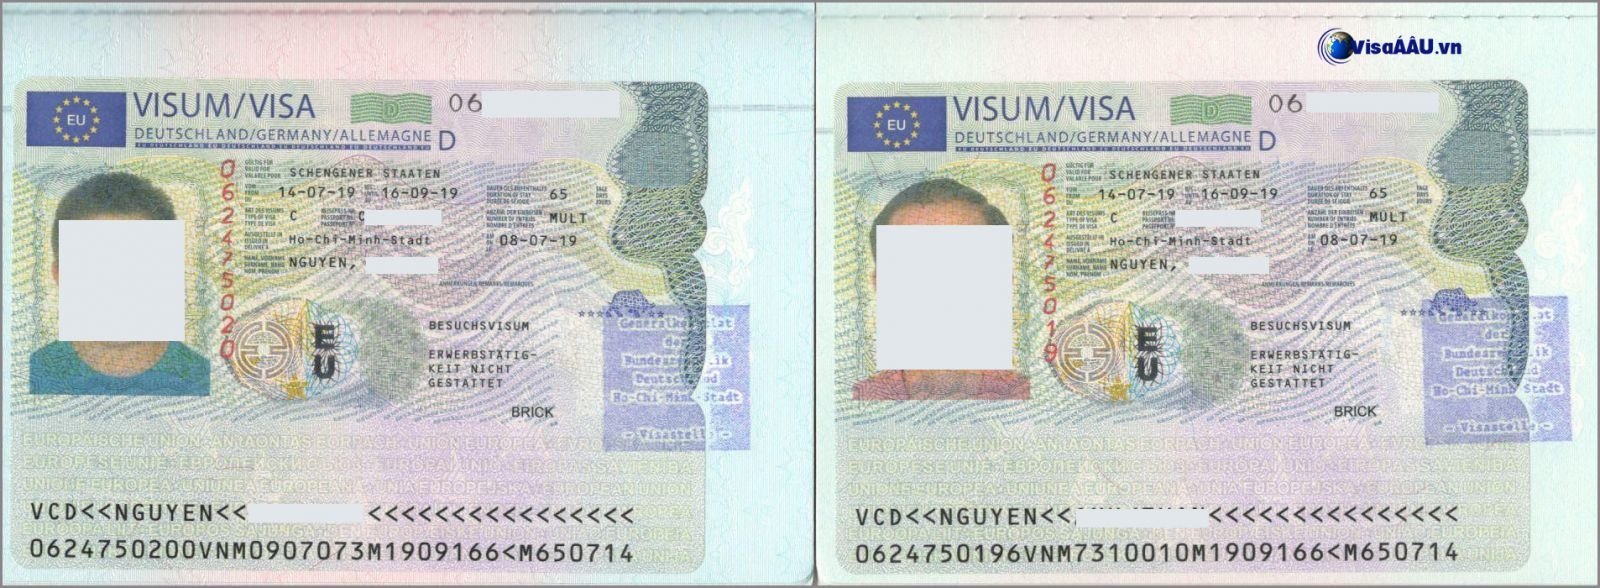 5 Lưu Ý Khi Xin Visa Đức